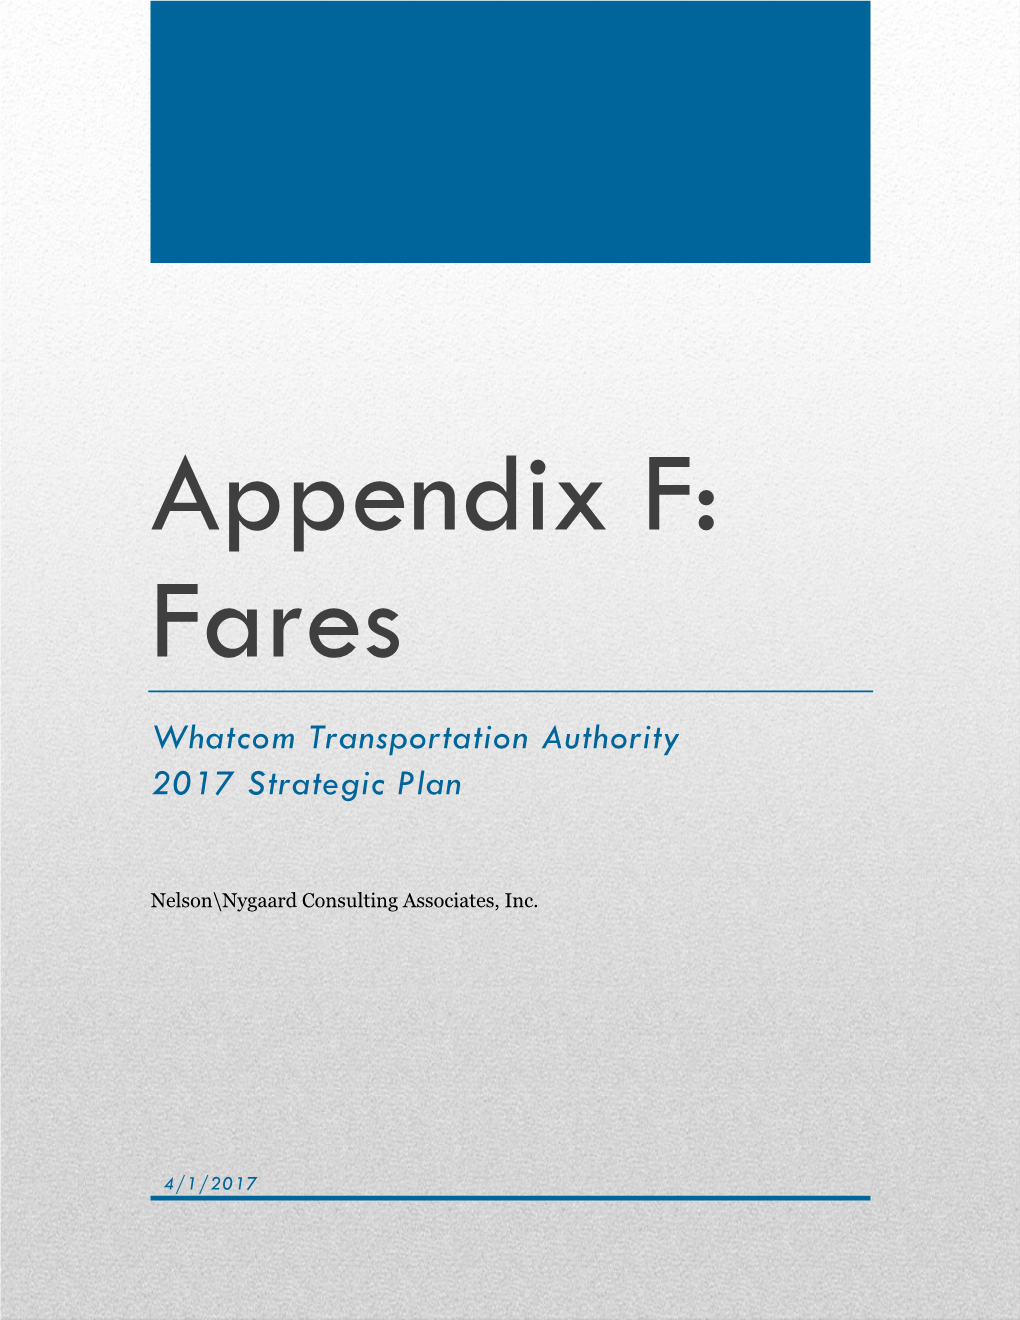 Appendix F: Fares